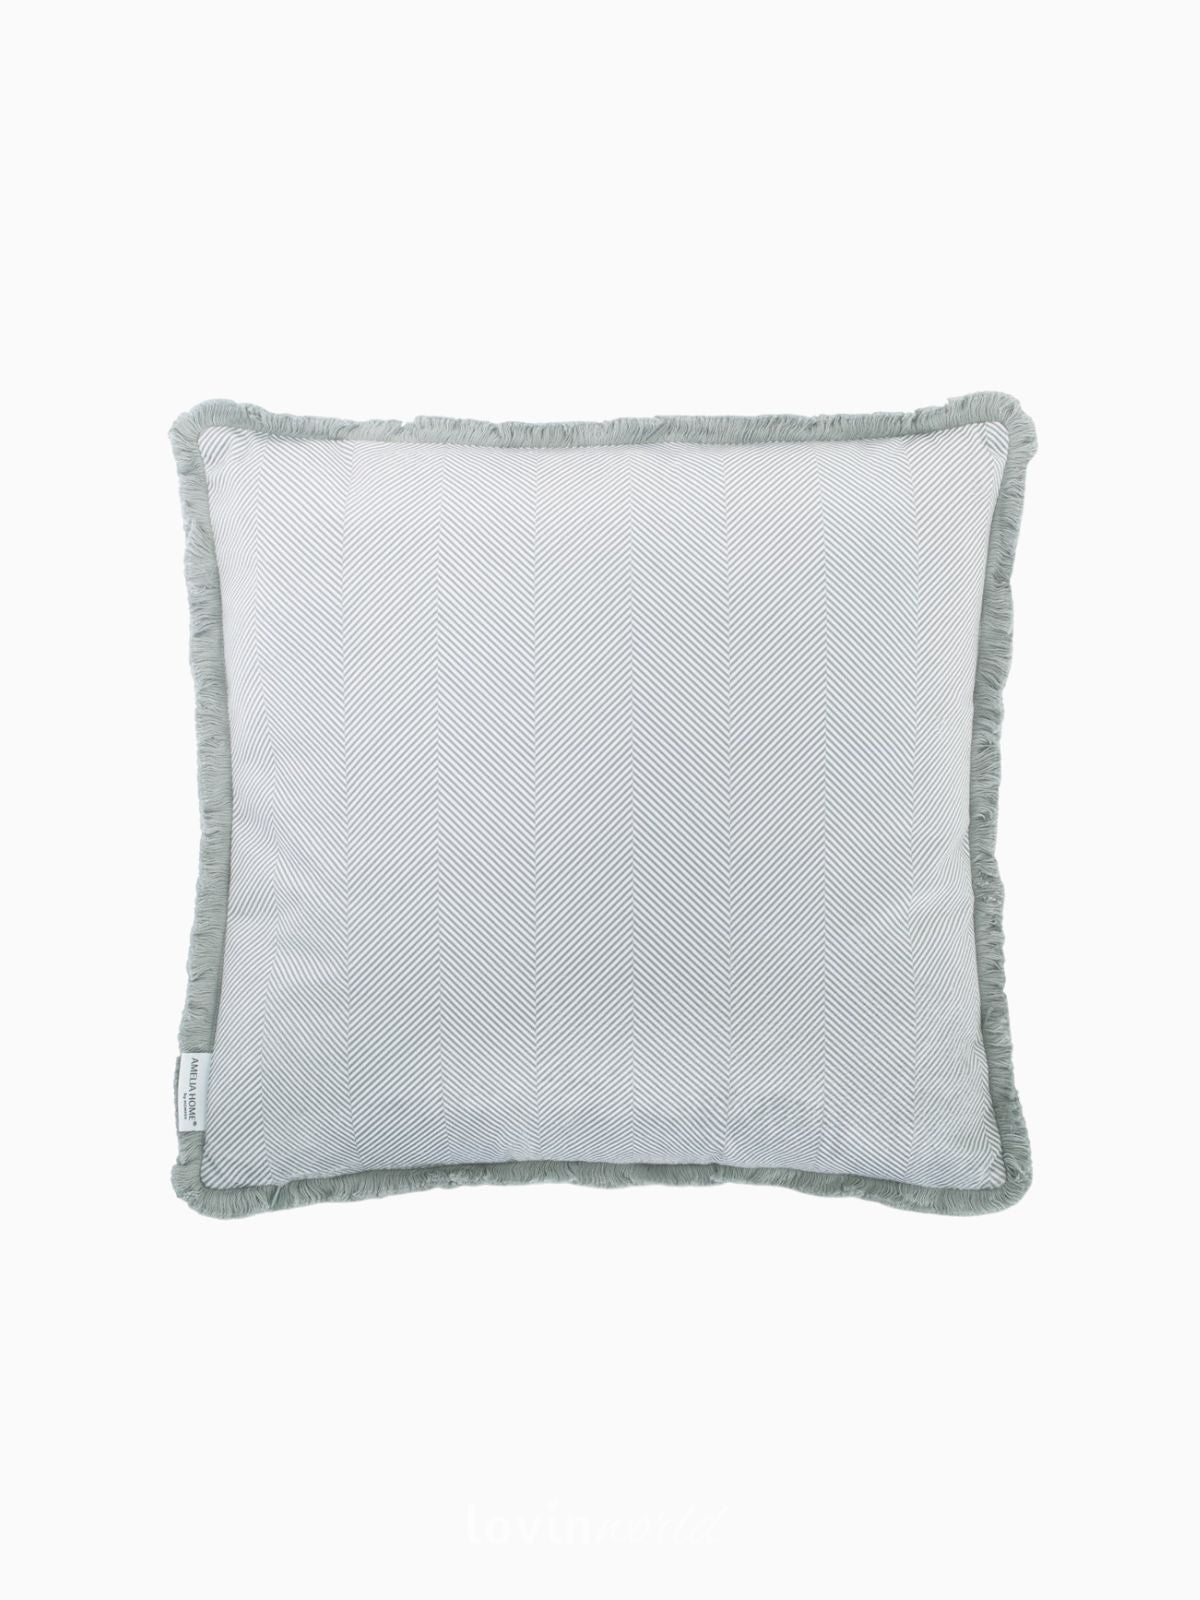 Cuscino decorativo in velluto Clear, colore grigio 45x45 cm.-1